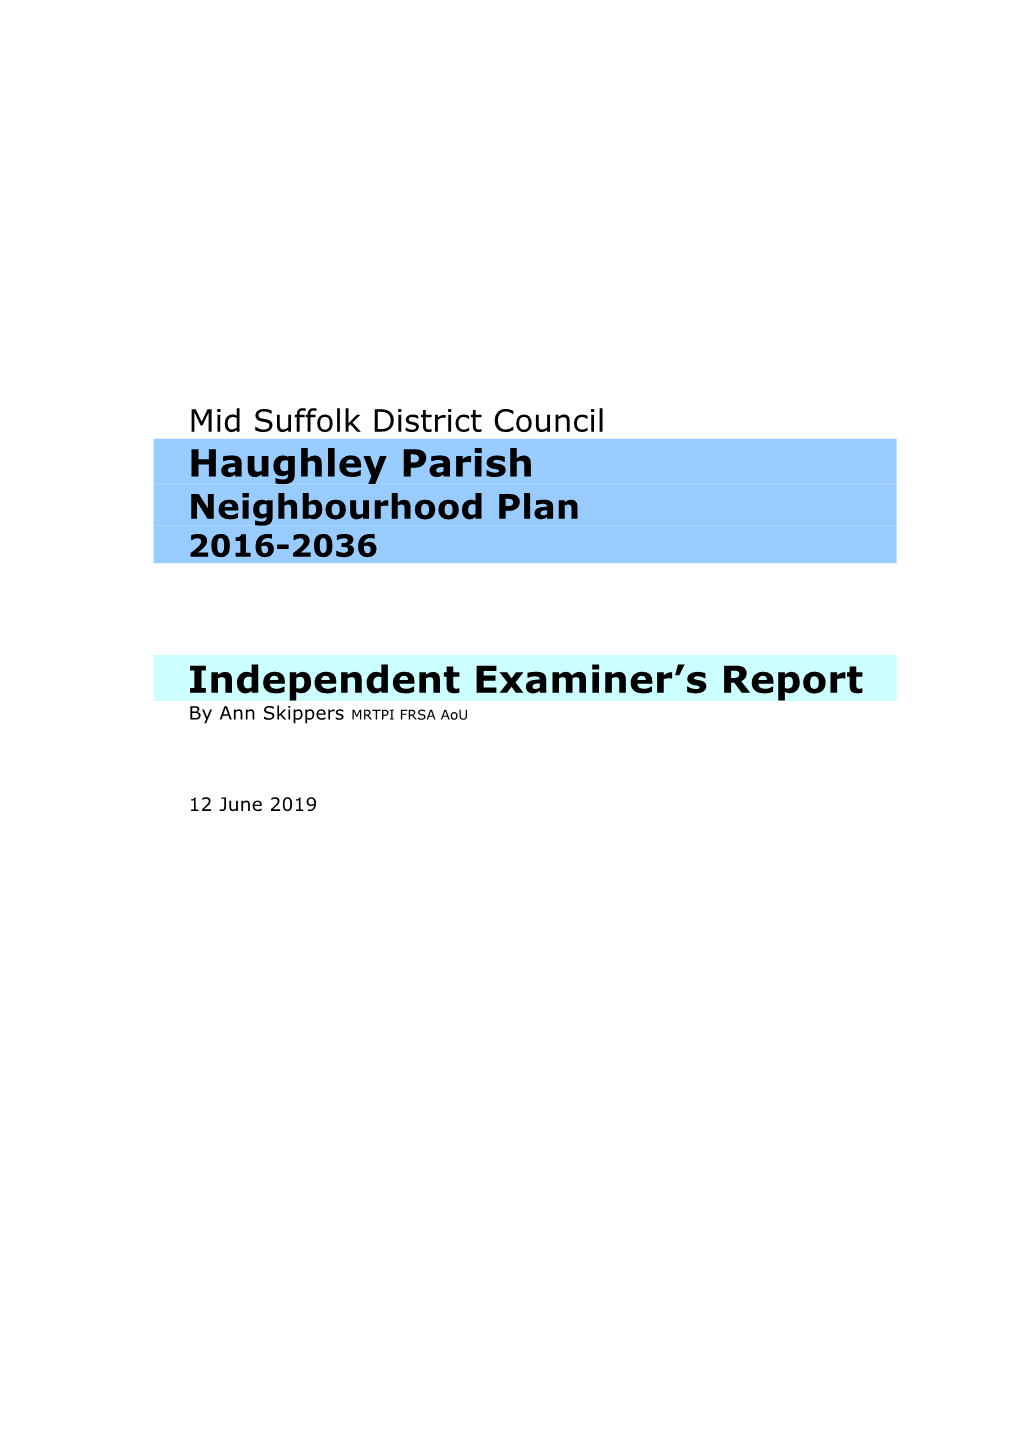 Haughley Parish Independent Examiner's Report